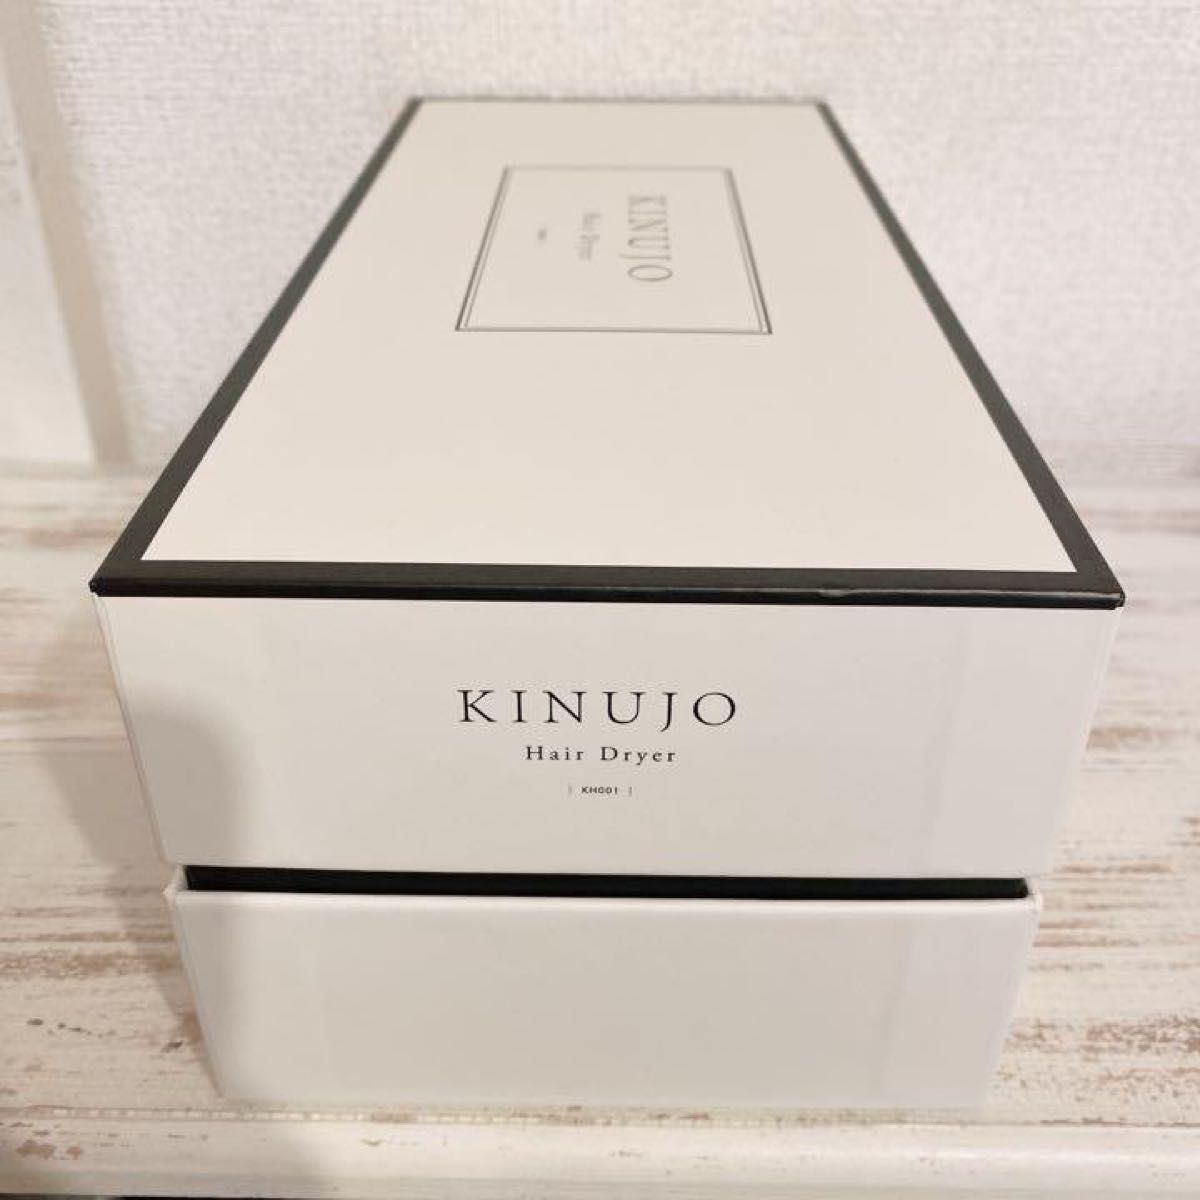 新品未使用 KINUJO ヘアードライヤー KH001 キヌージョ 絹女 ホワイト